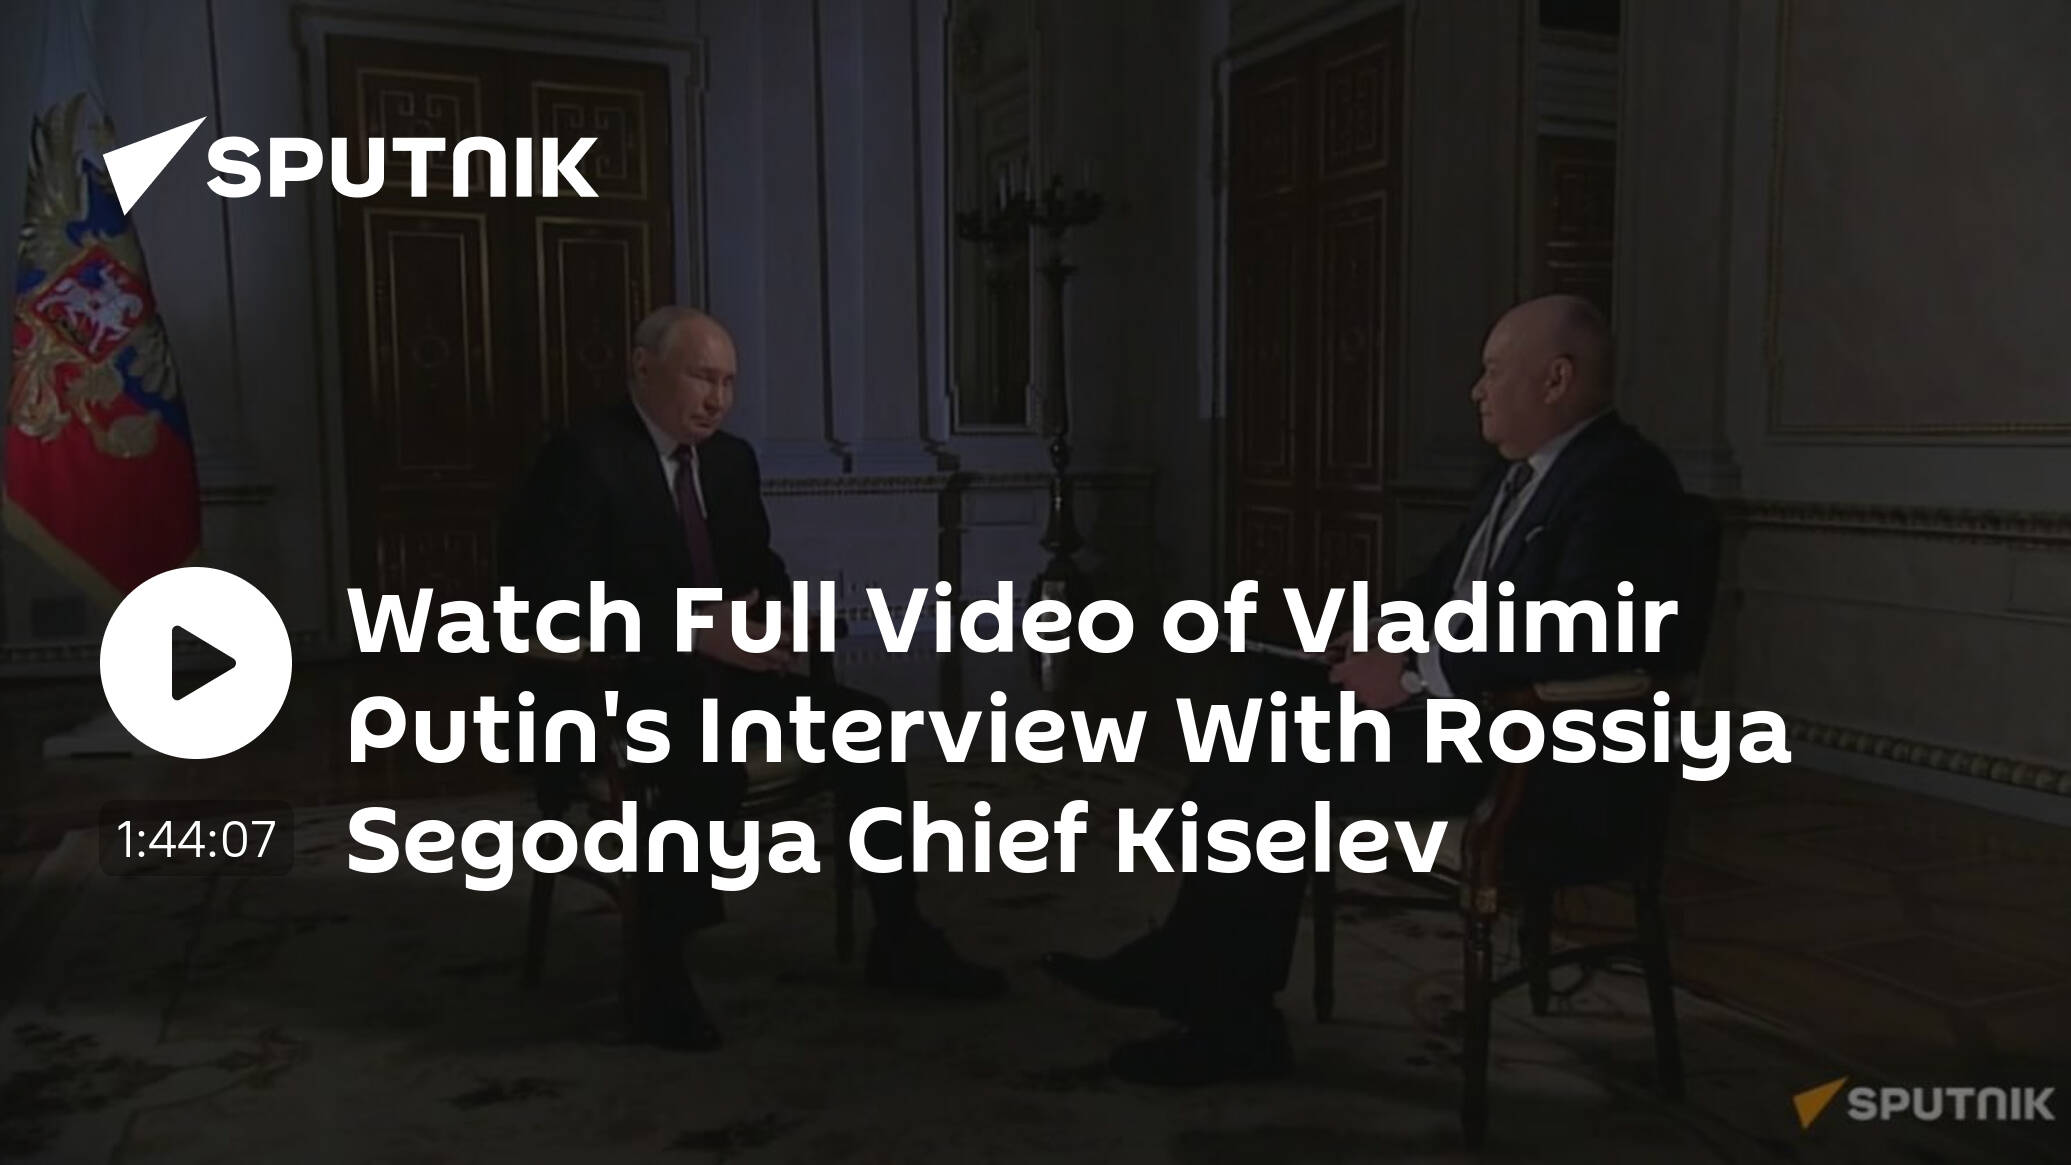 Vladimir Putin Holds Interview With Rossiya Segodnya Chief Kiselev